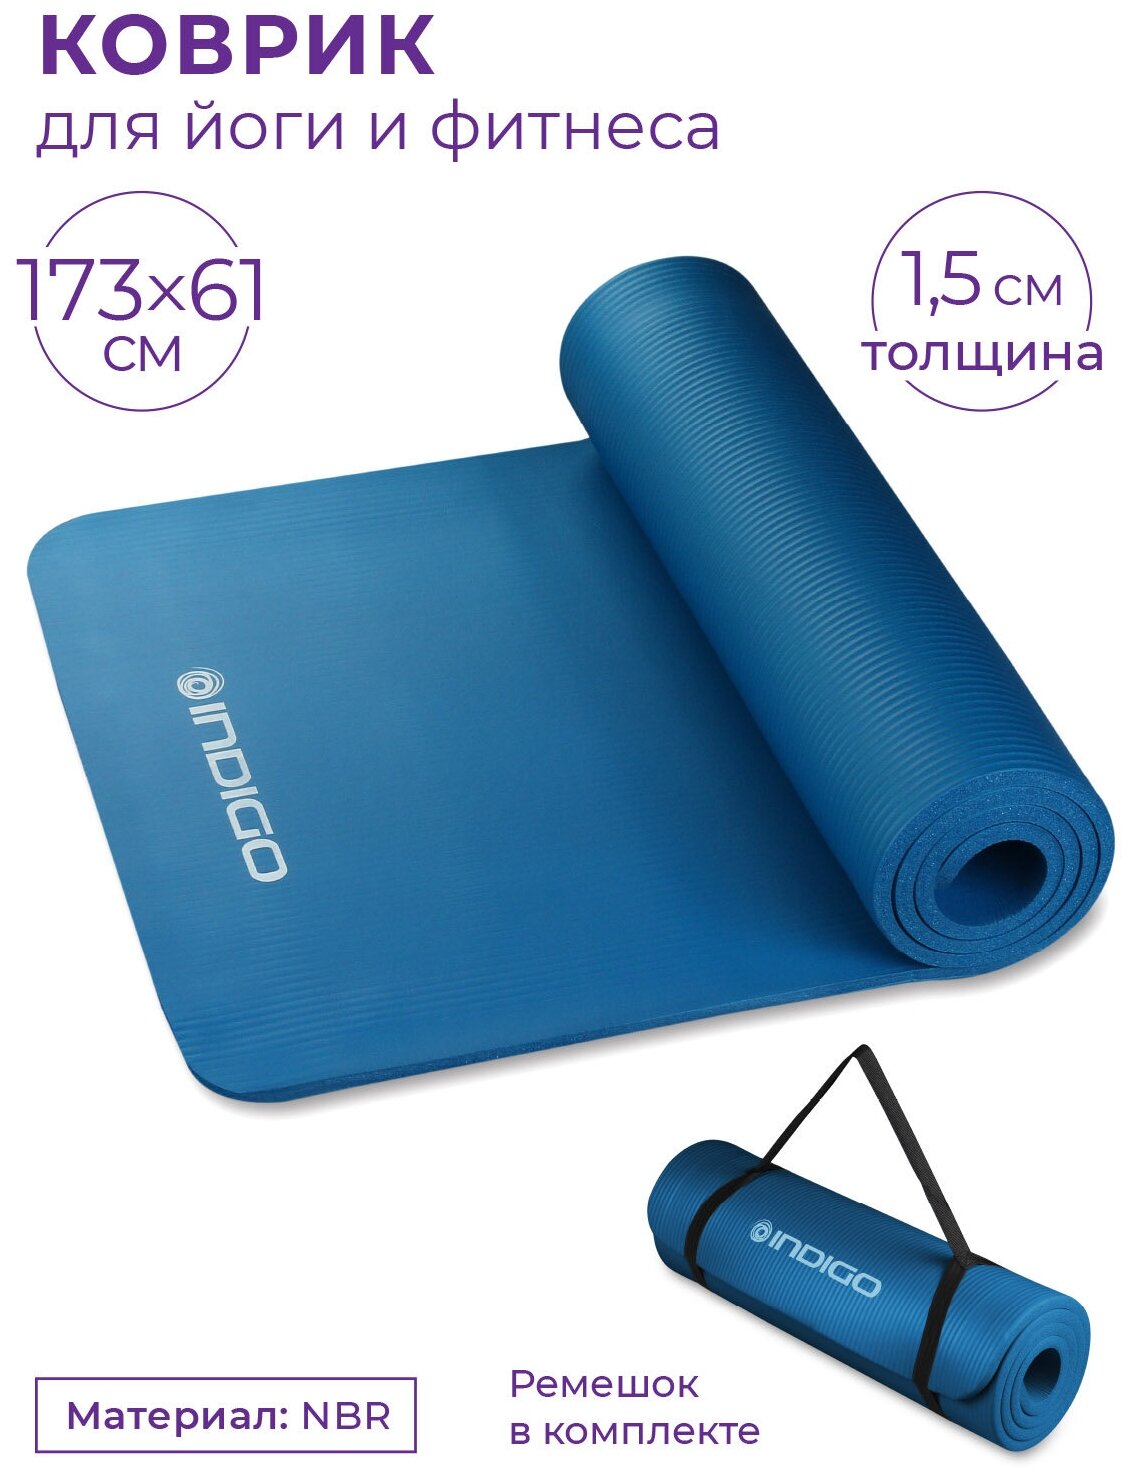 Коврик для йоги и фитнеса INDIGO NBR IN194 Синий 173*61*1,5 см